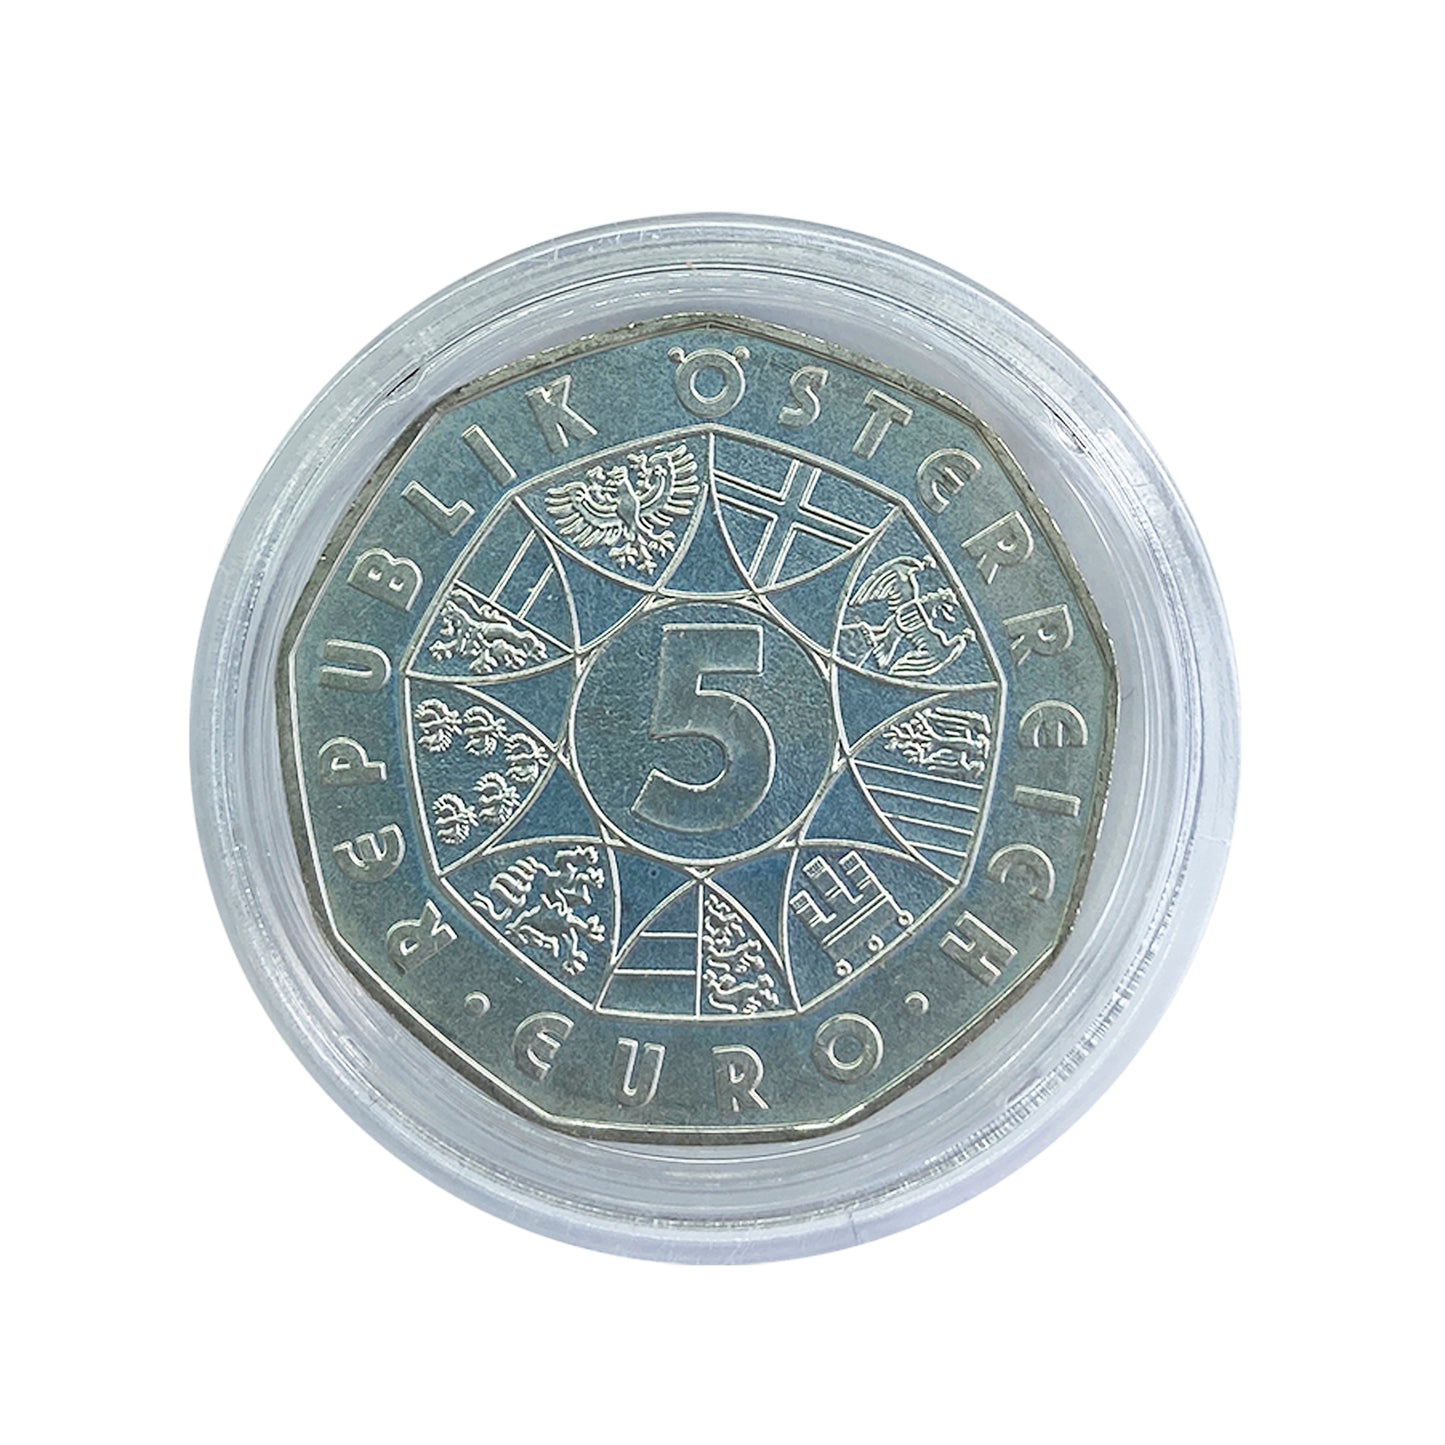 Austria - Moneda 5 euros plata 2008 - Centenario del nacimiento de Herbert von Karajan